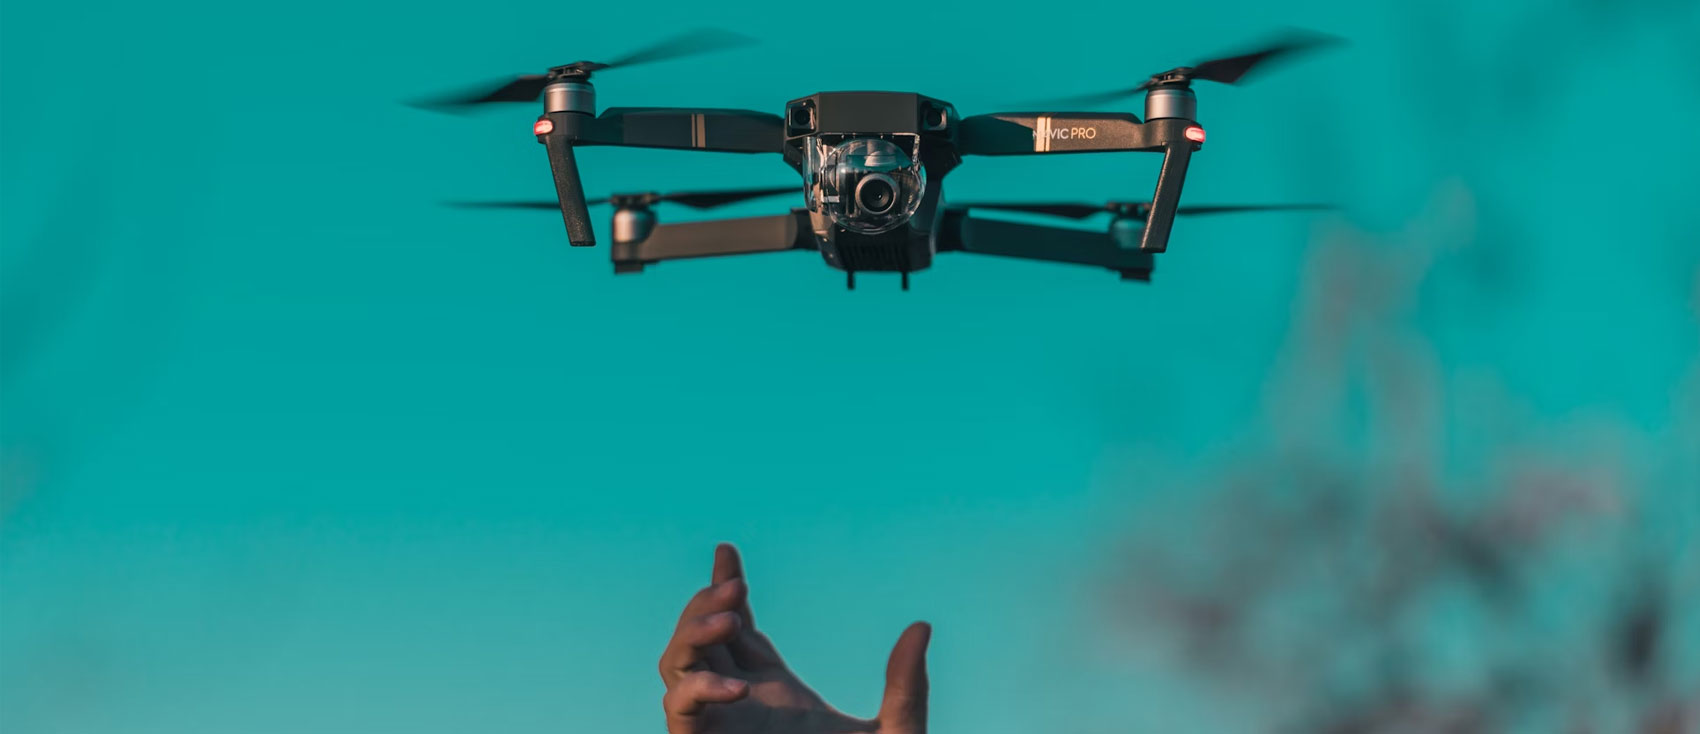 Servicios audiovisuales con drones